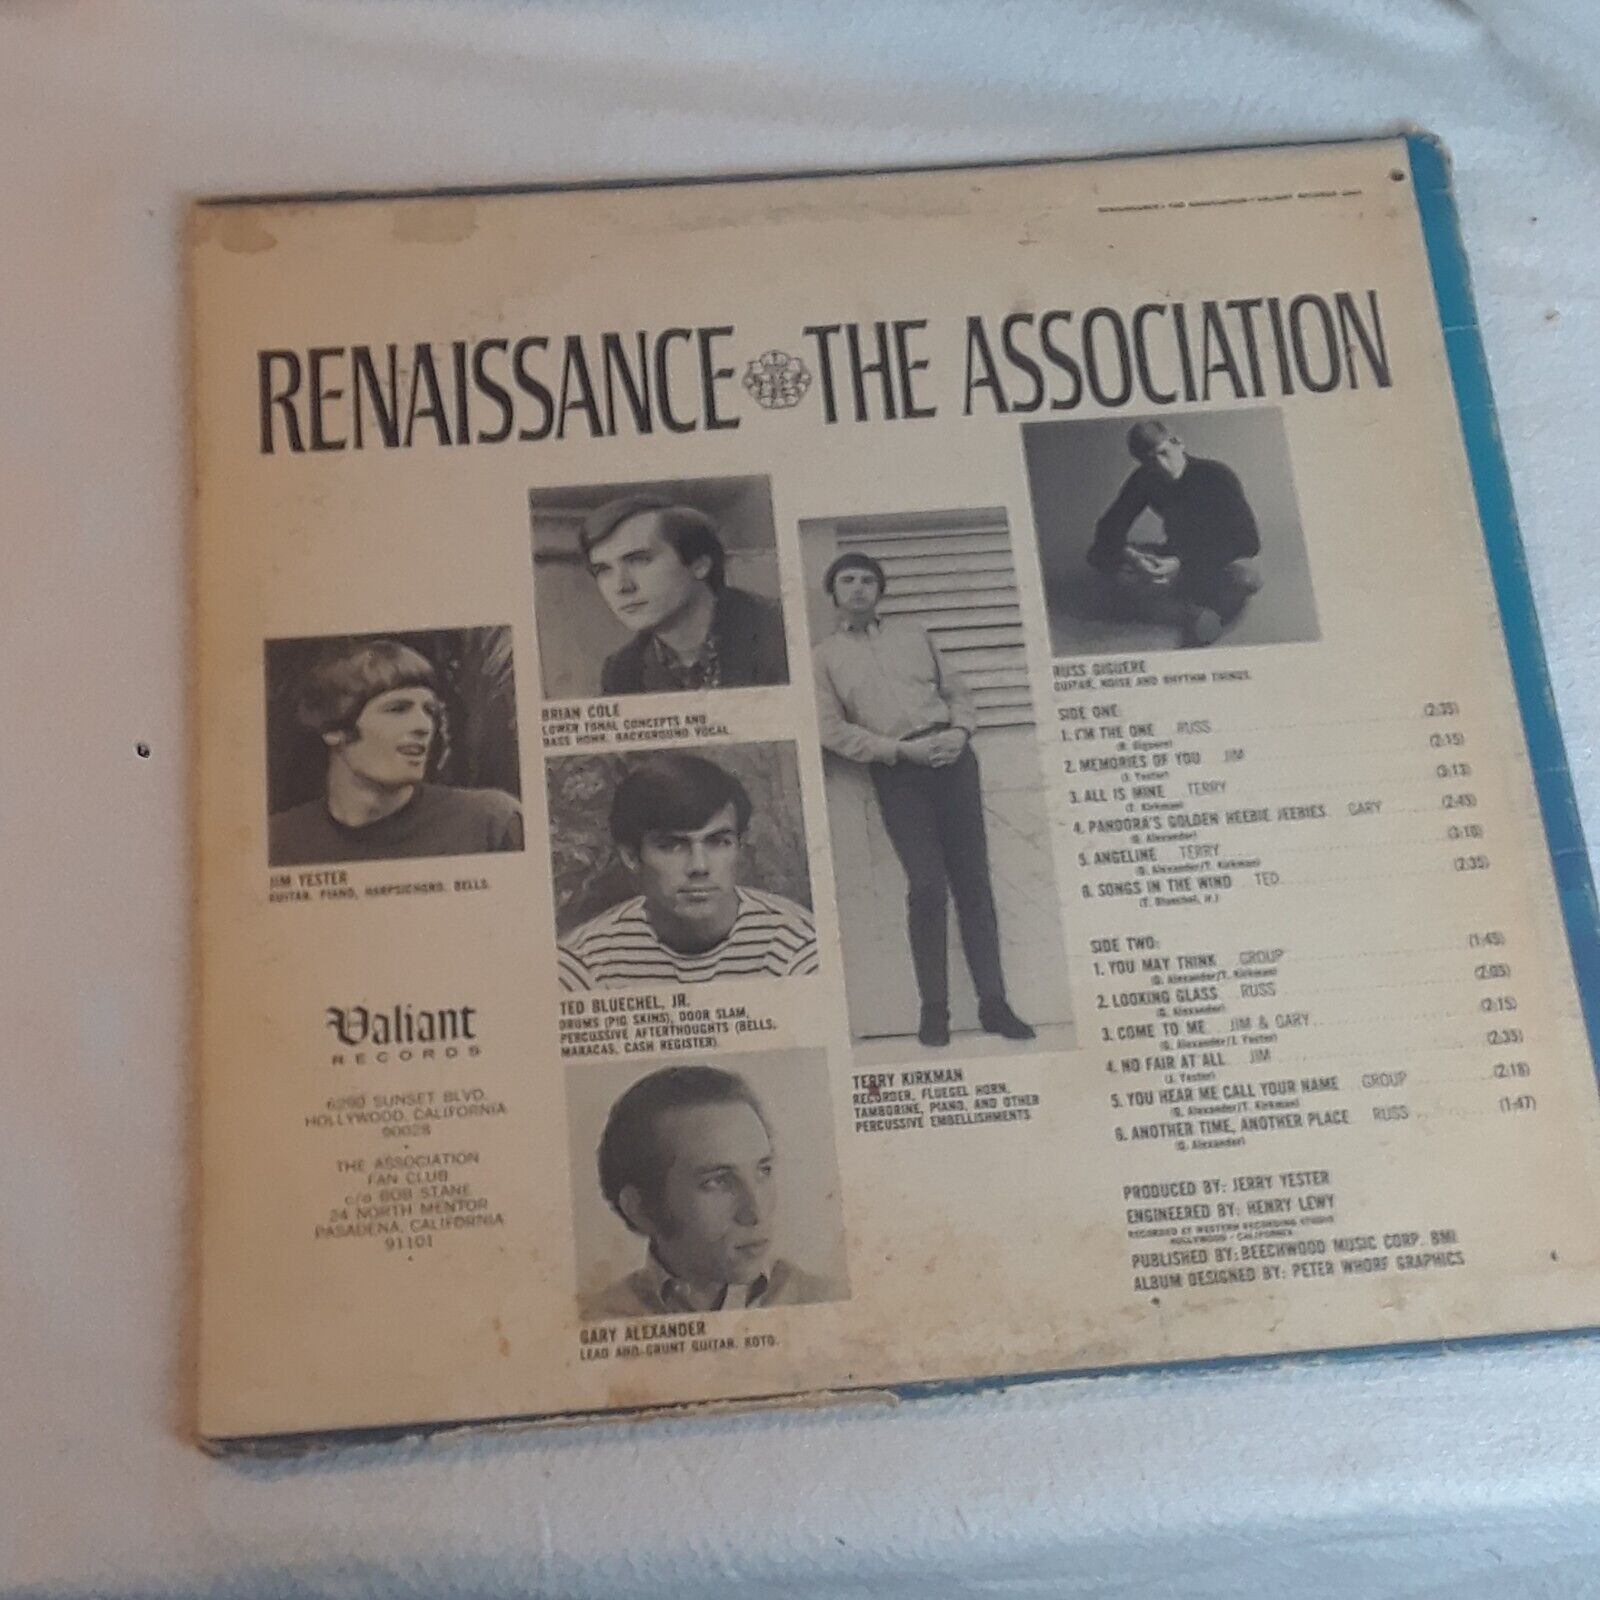 Renaissance The Association LP vinyl Album c7